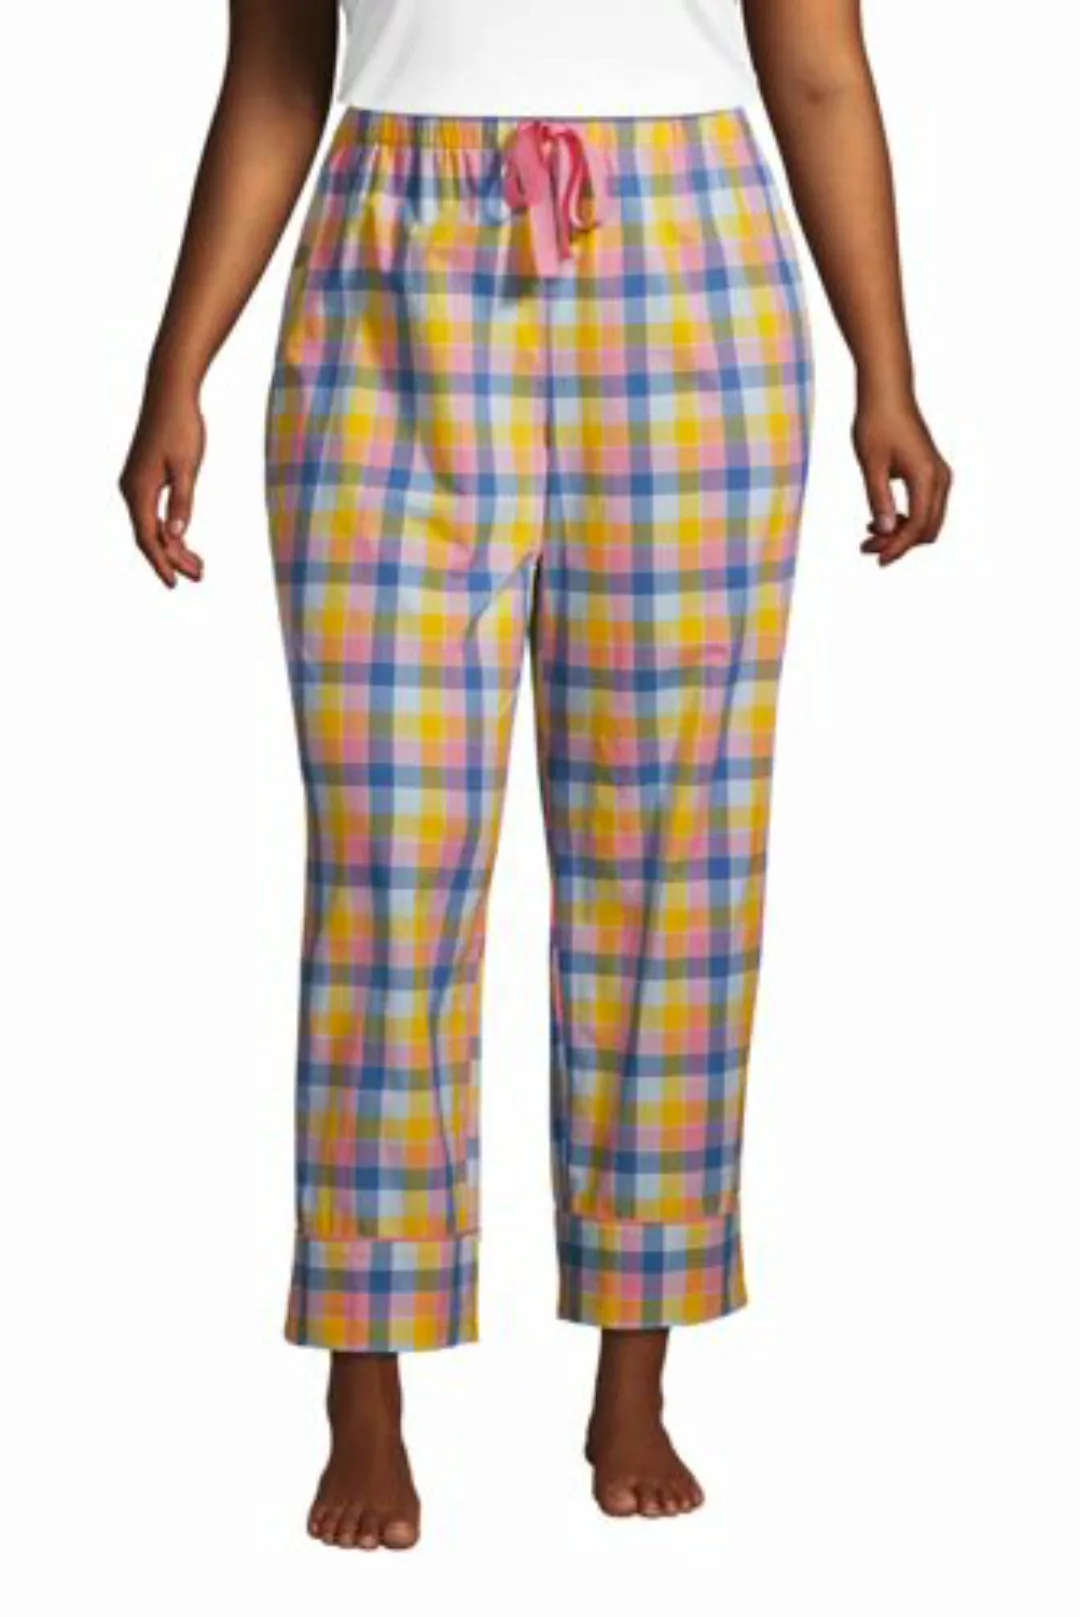 Popelin-Pyjamahose in 7/8-Länge in großen Größen, Damen, Größe: 56-58 Plusg günstig online kaufen